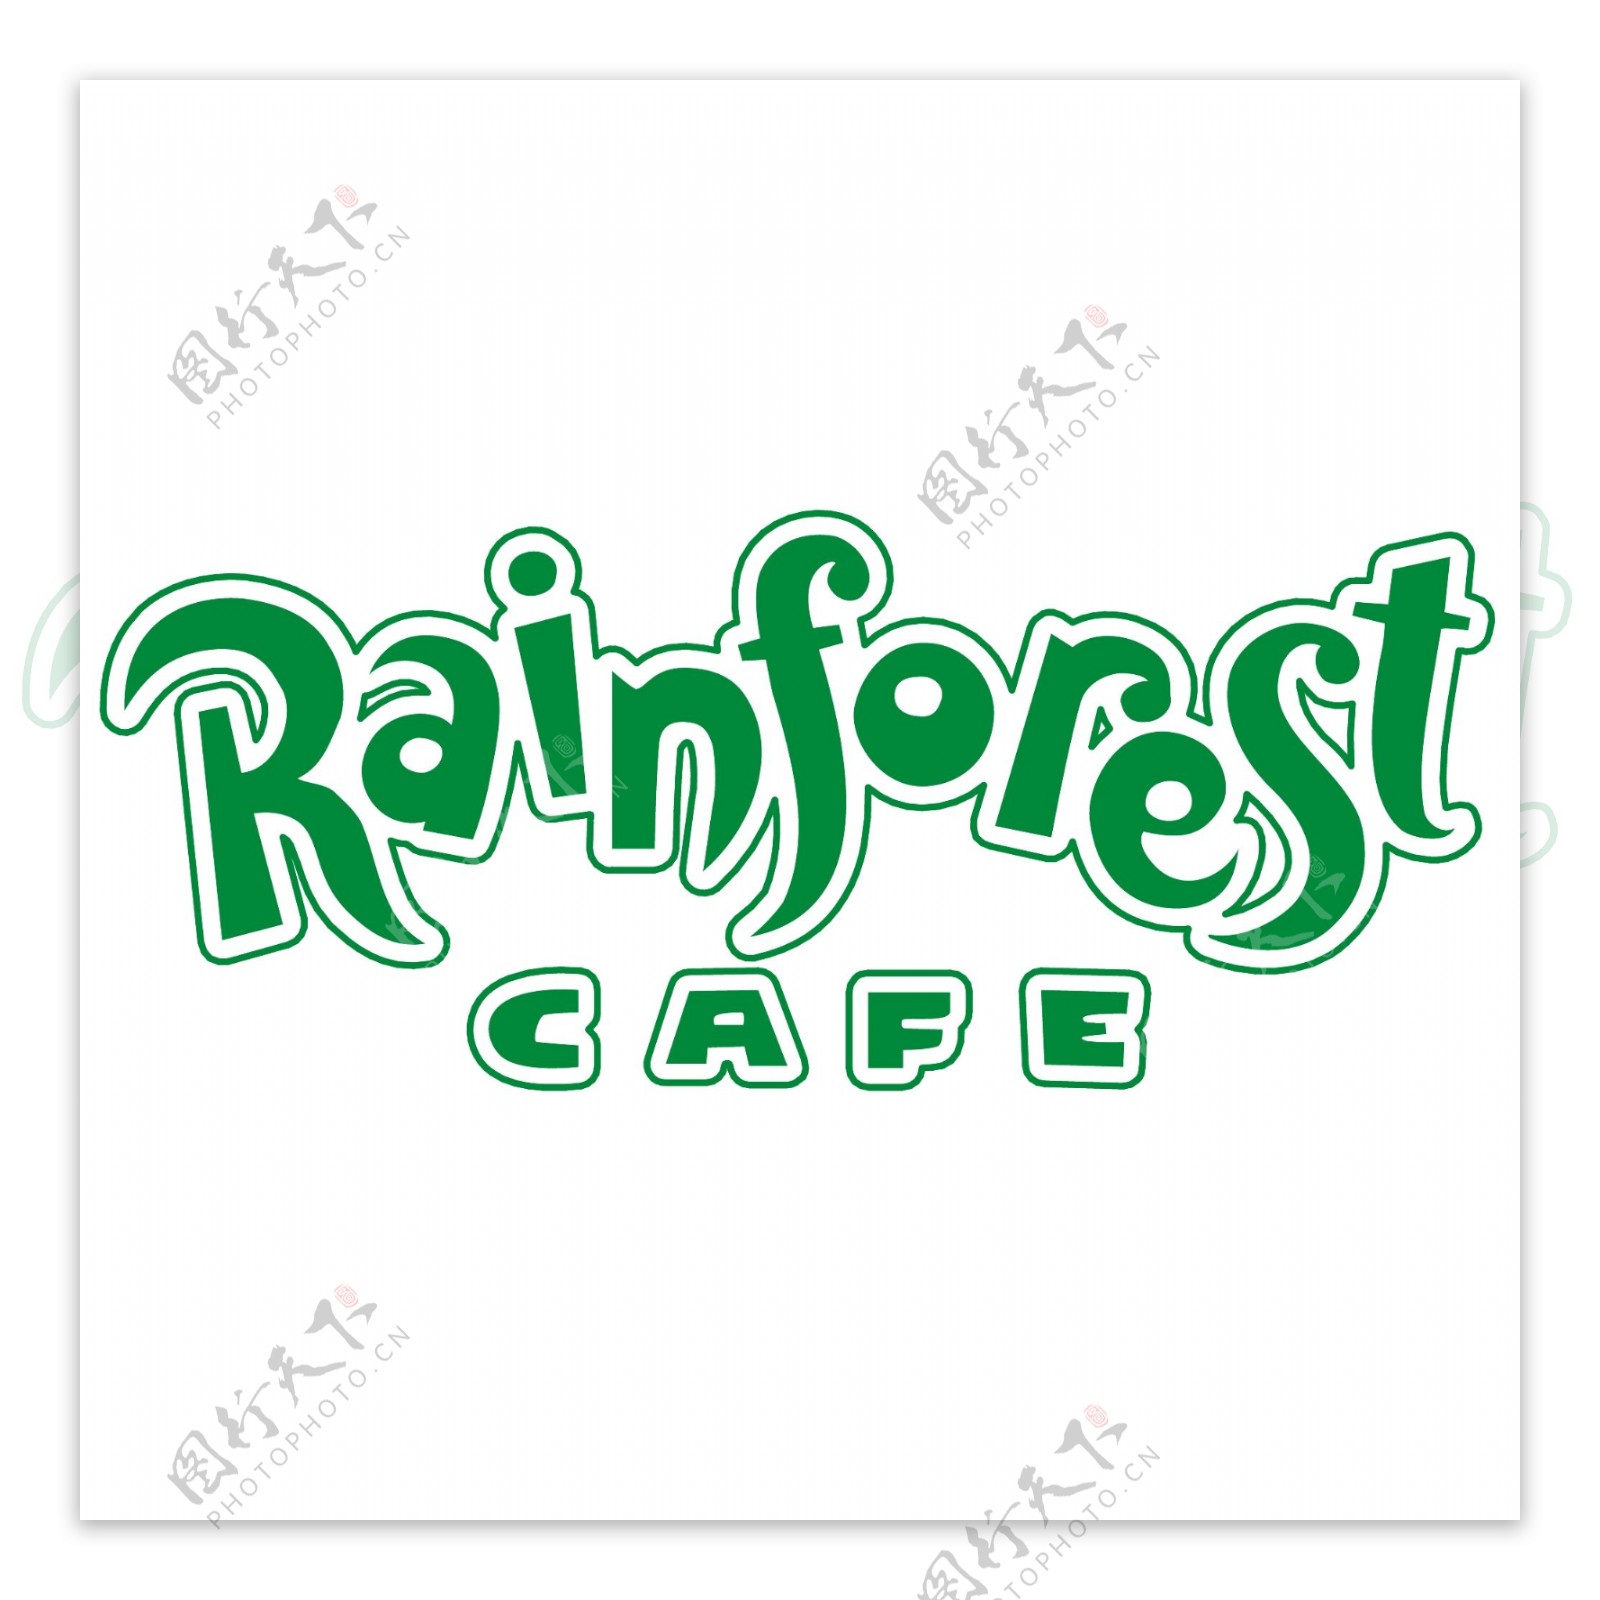 热带雨林餐厅